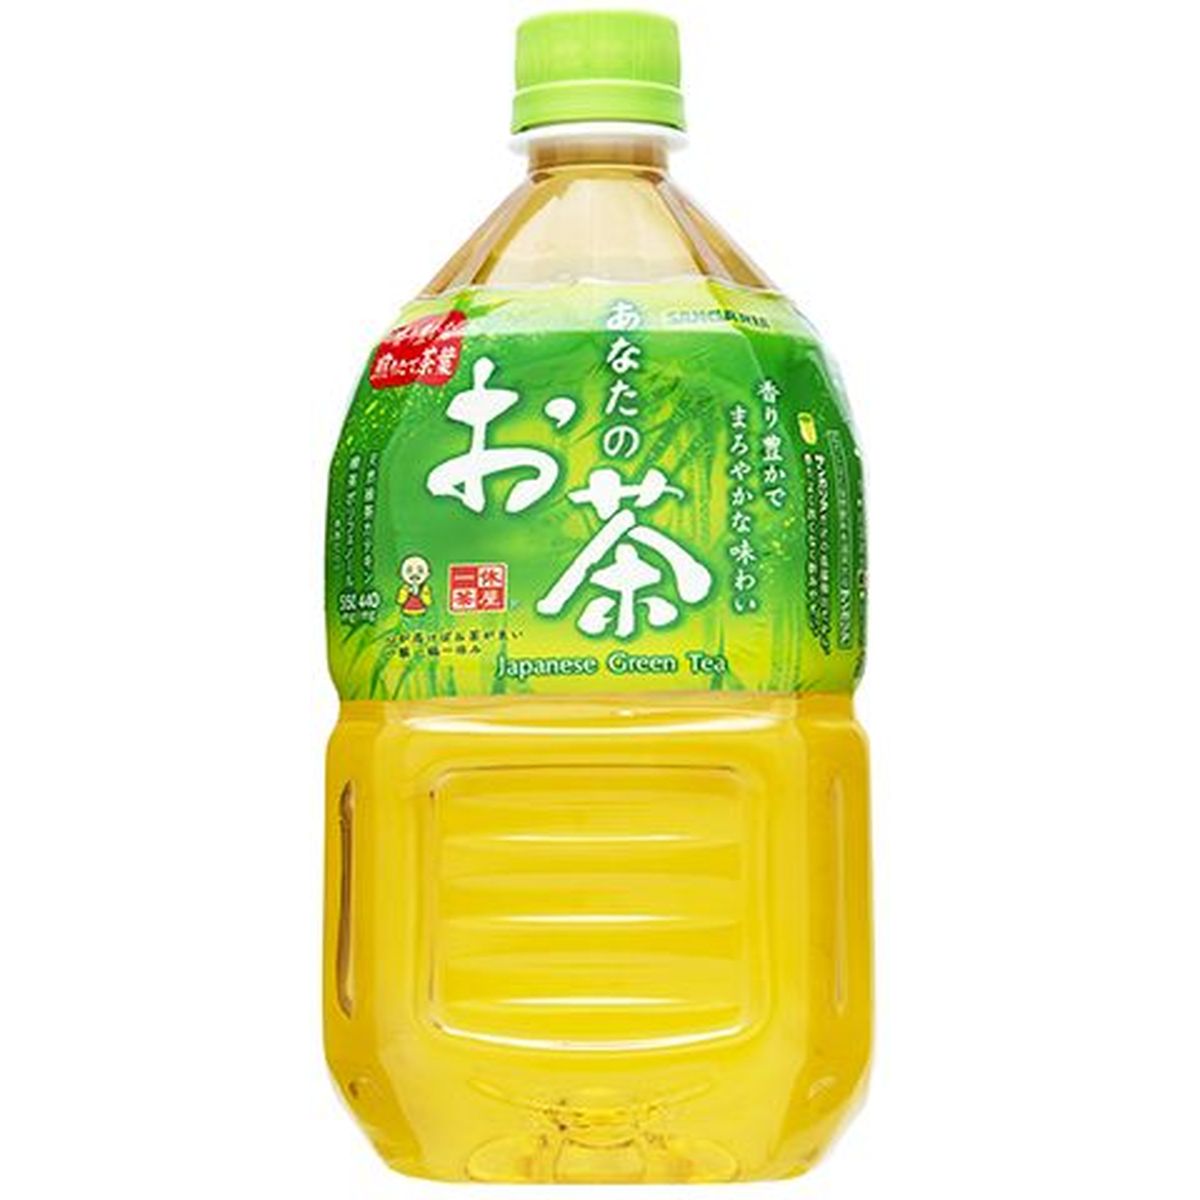 【12個入リ】サンガリア アナタノオ茶 ペット 1L